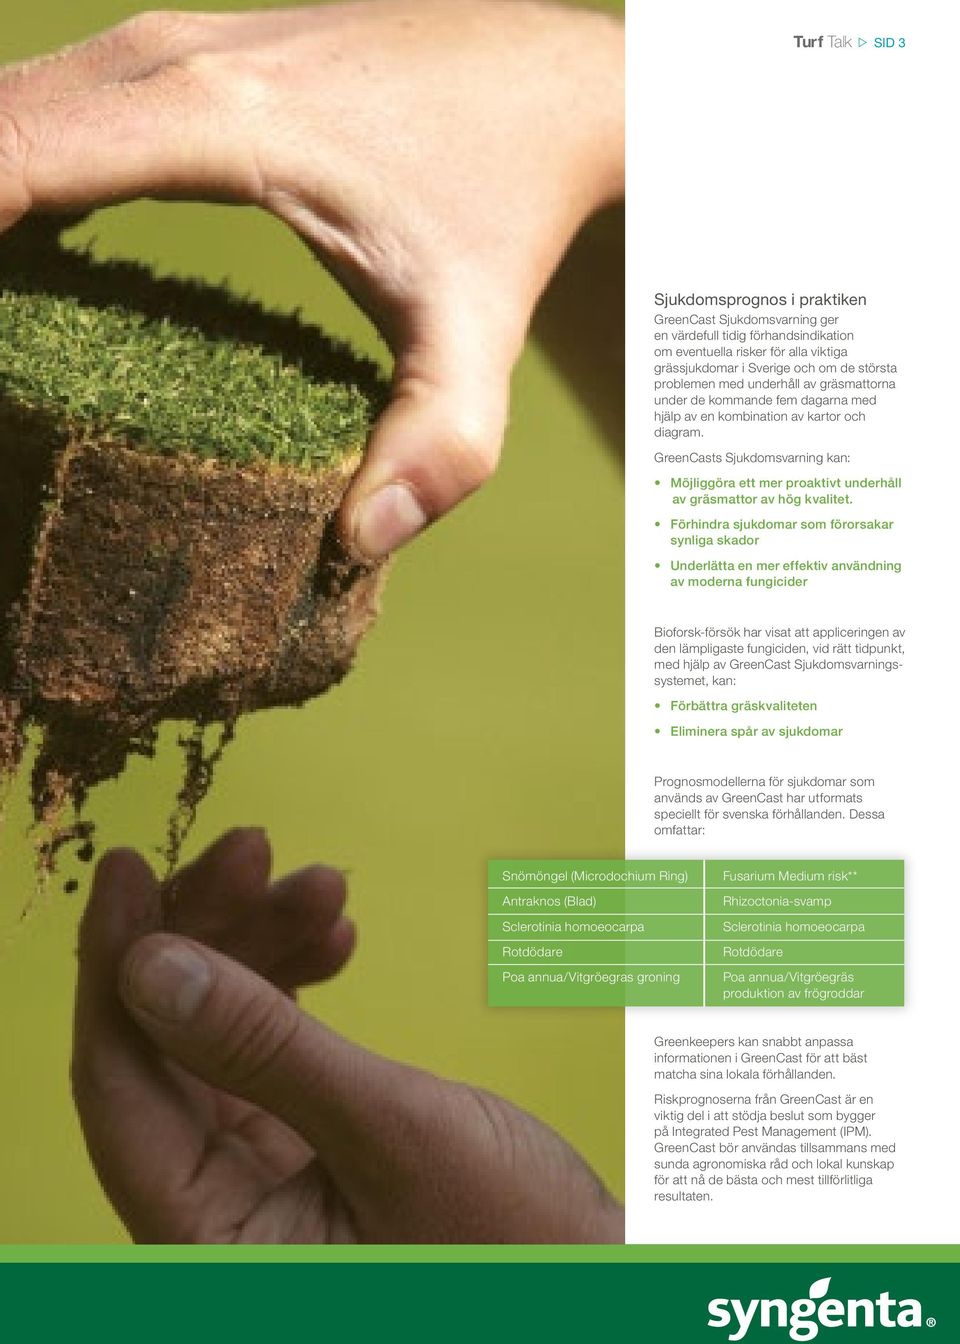 GreenCasts Sjukdomsvarning kan: Möjliggöra ett mer proaktivt underhåll av gräsmattor av hög kvalitet.